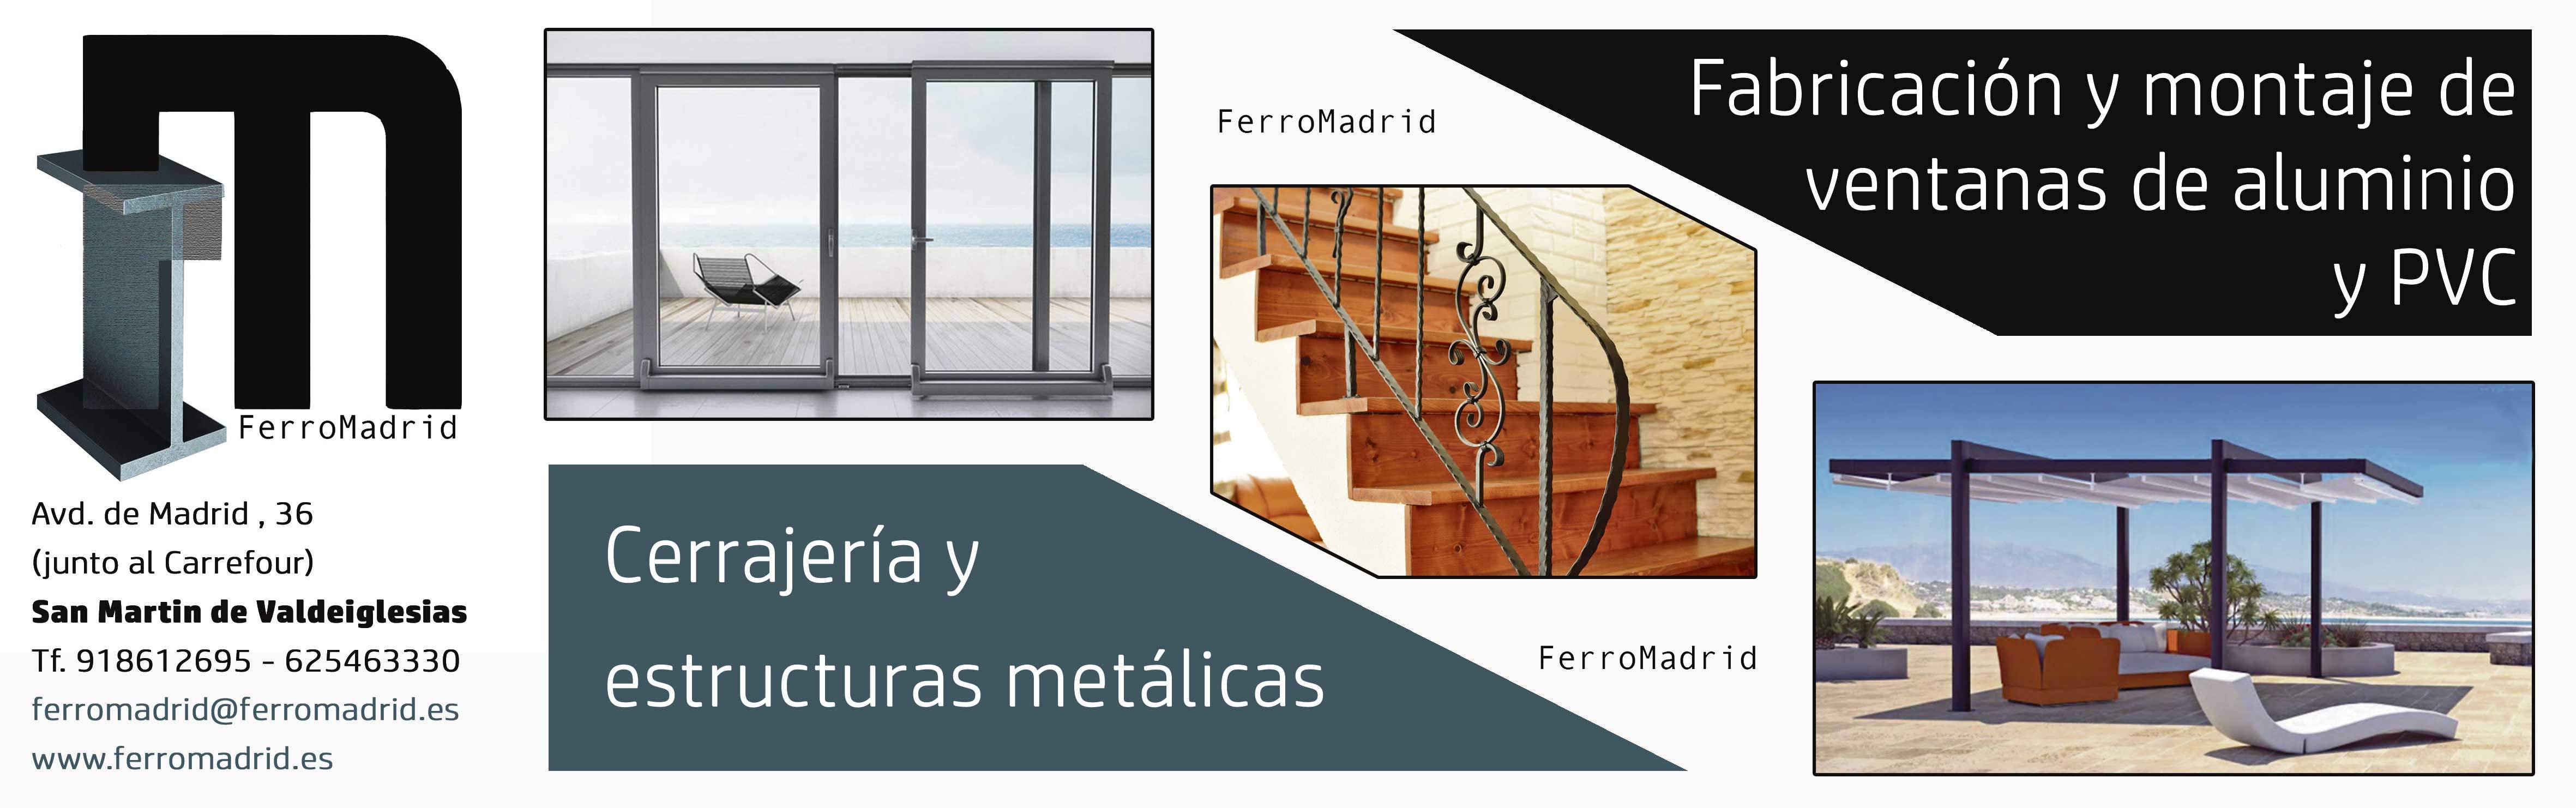 Taller de cerrajería metálica y aluminio Madrid